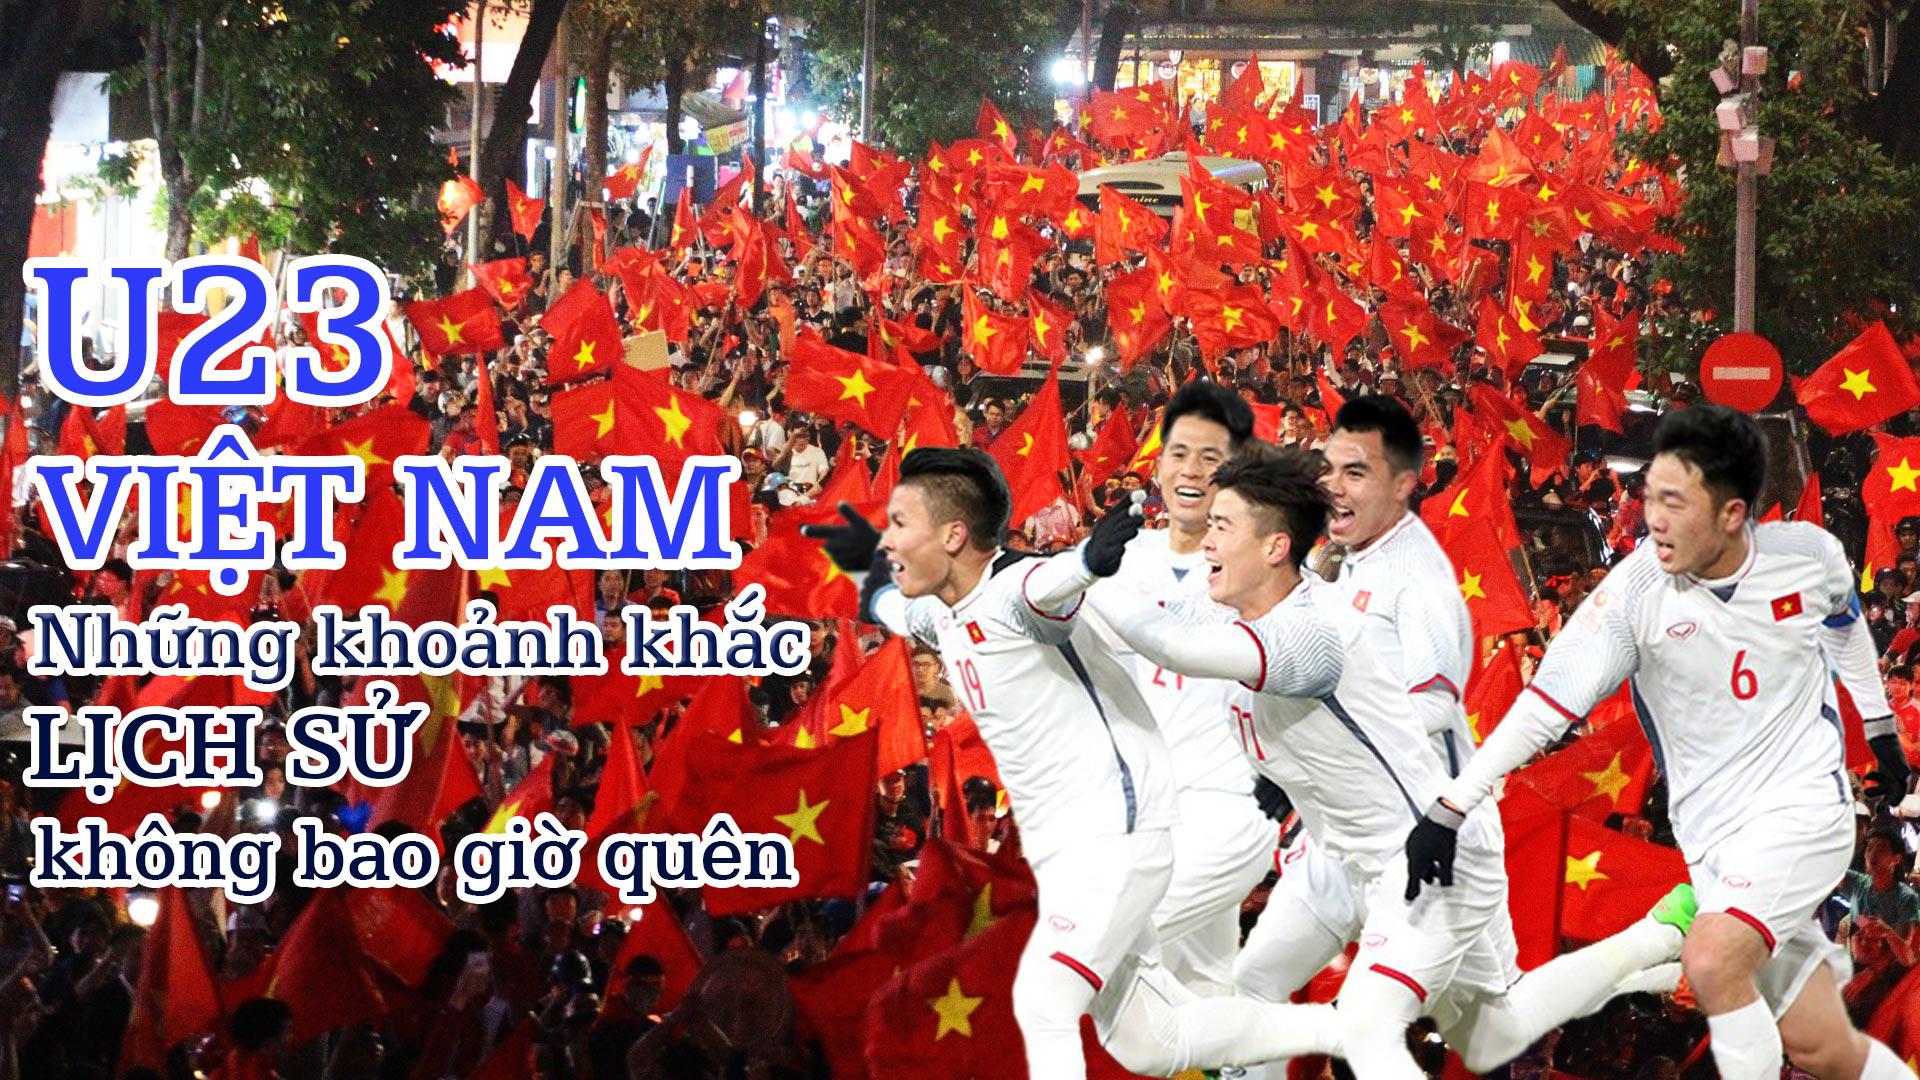 U23 Việt Nam - Những khoảnh khắc lịch sử không bao giờ quên - 1